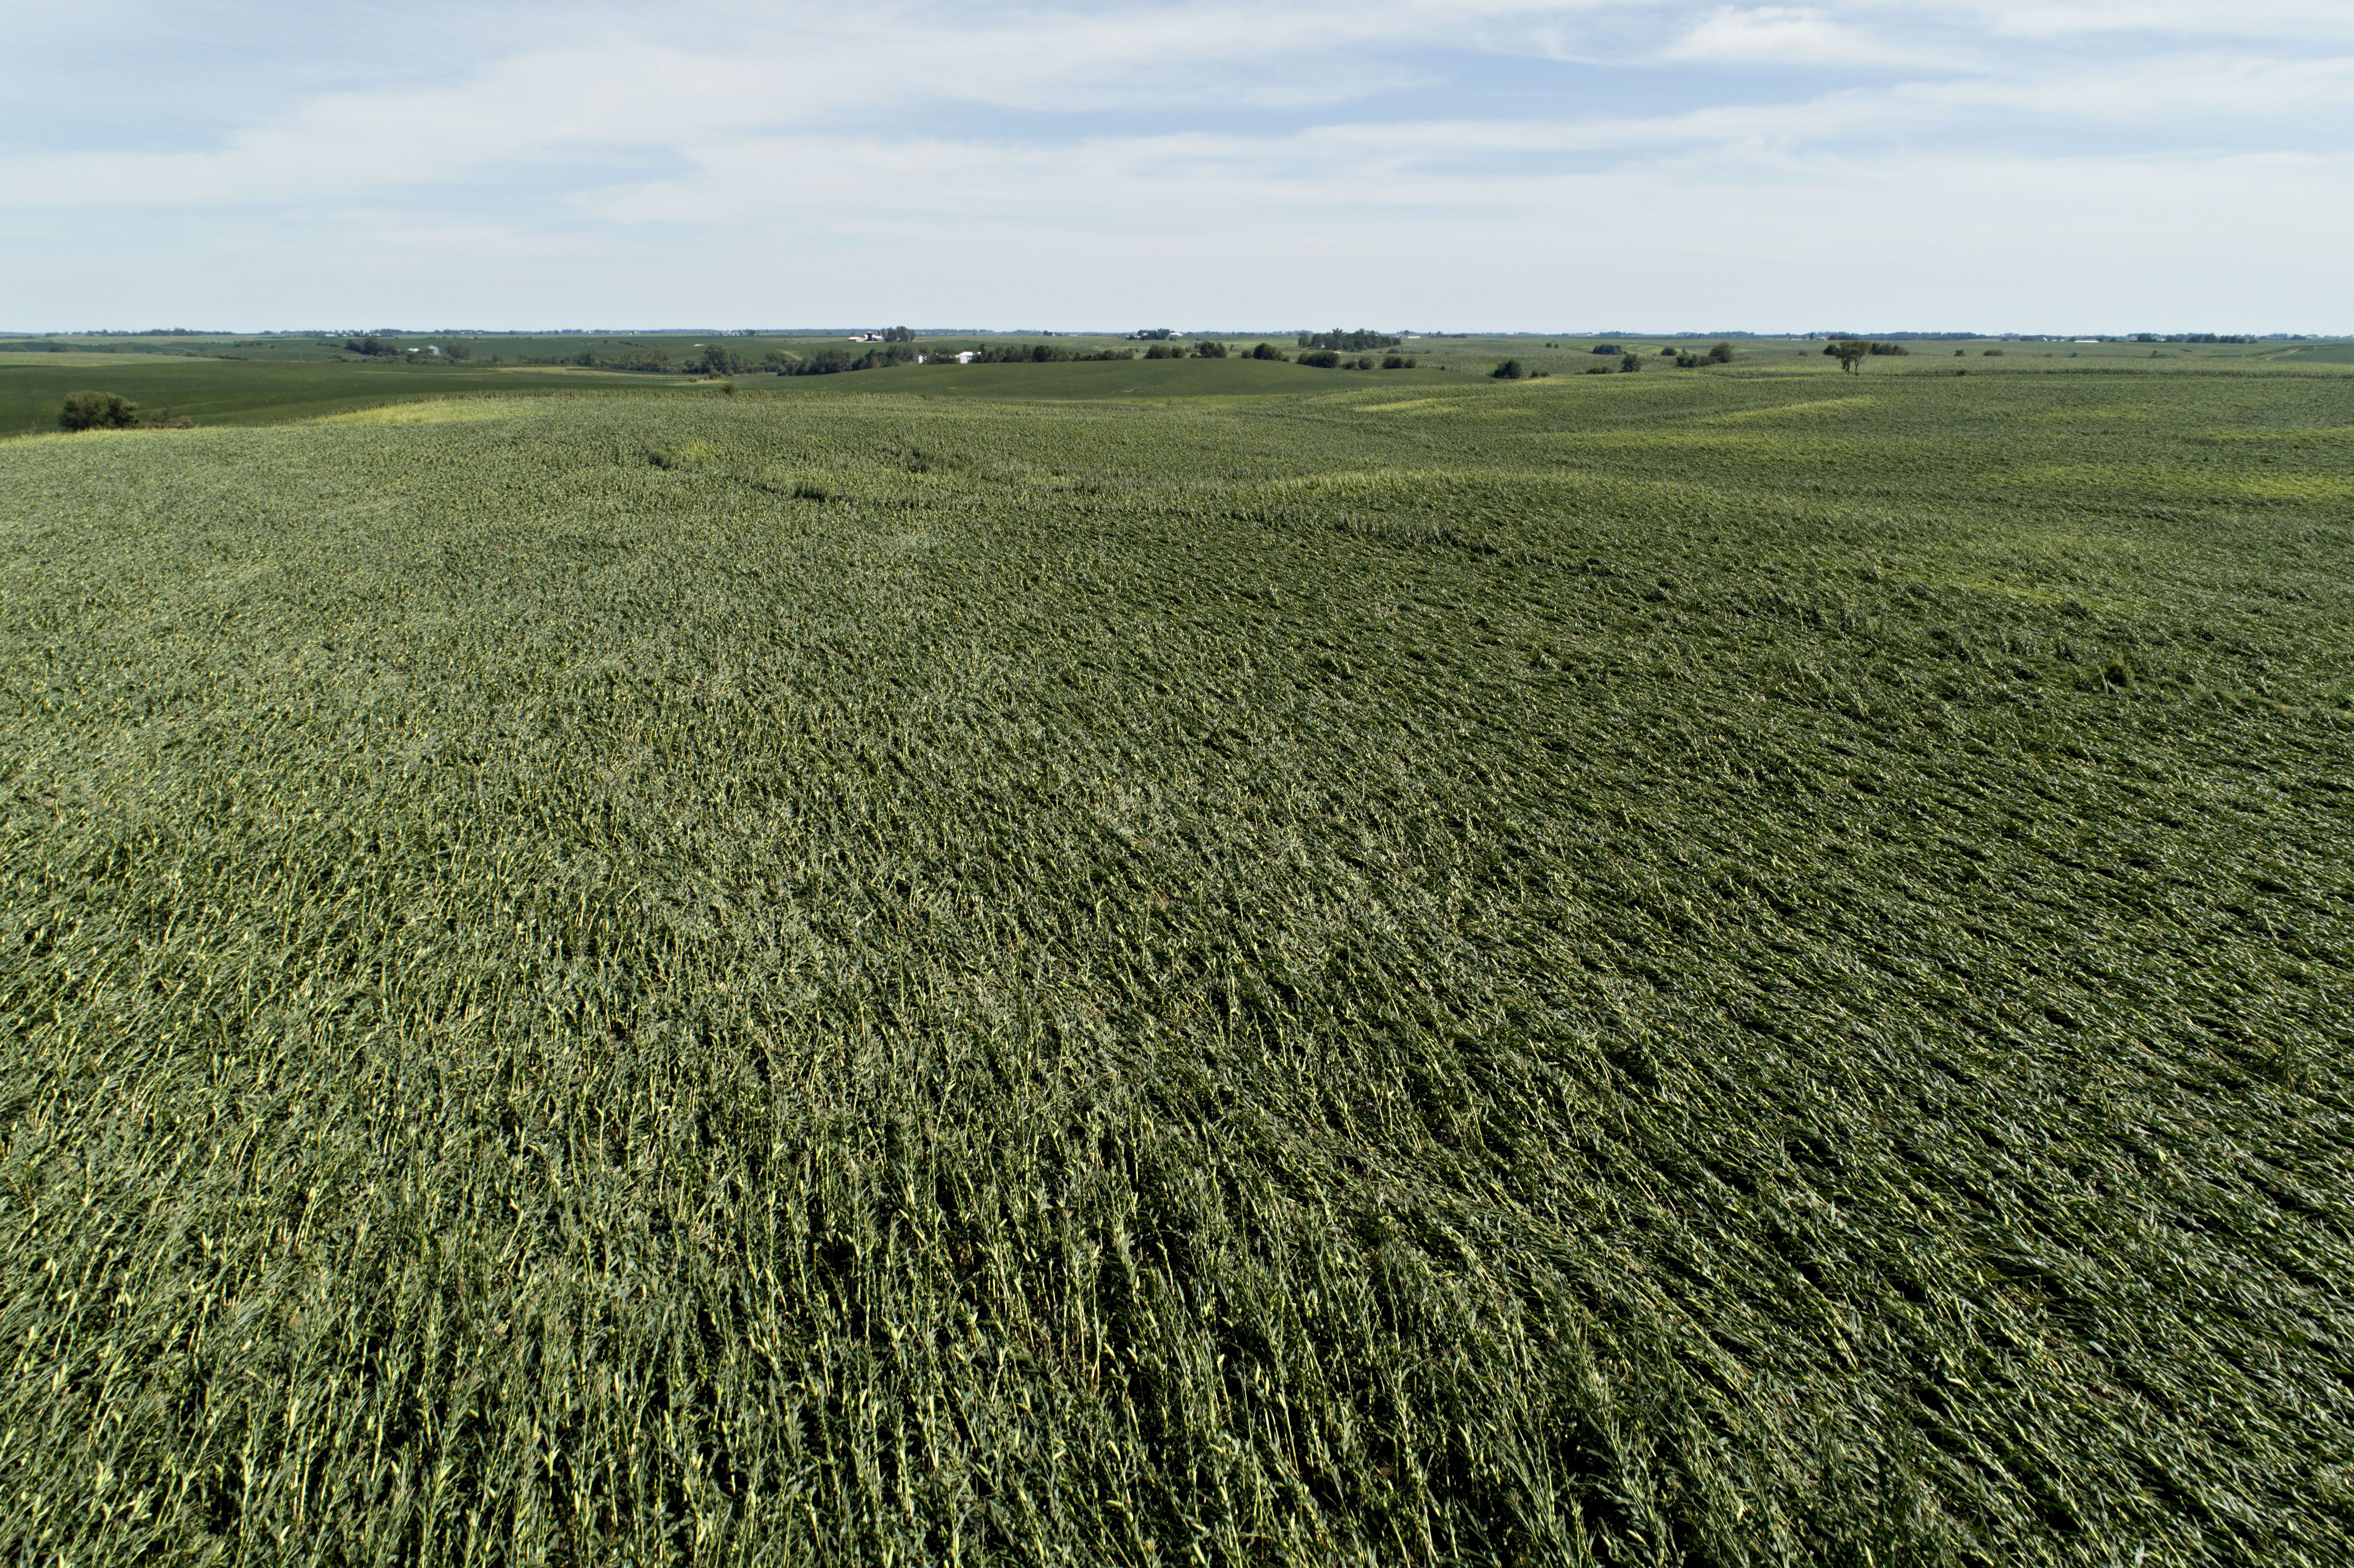 Birds eye view of a field of flattened corn stalks